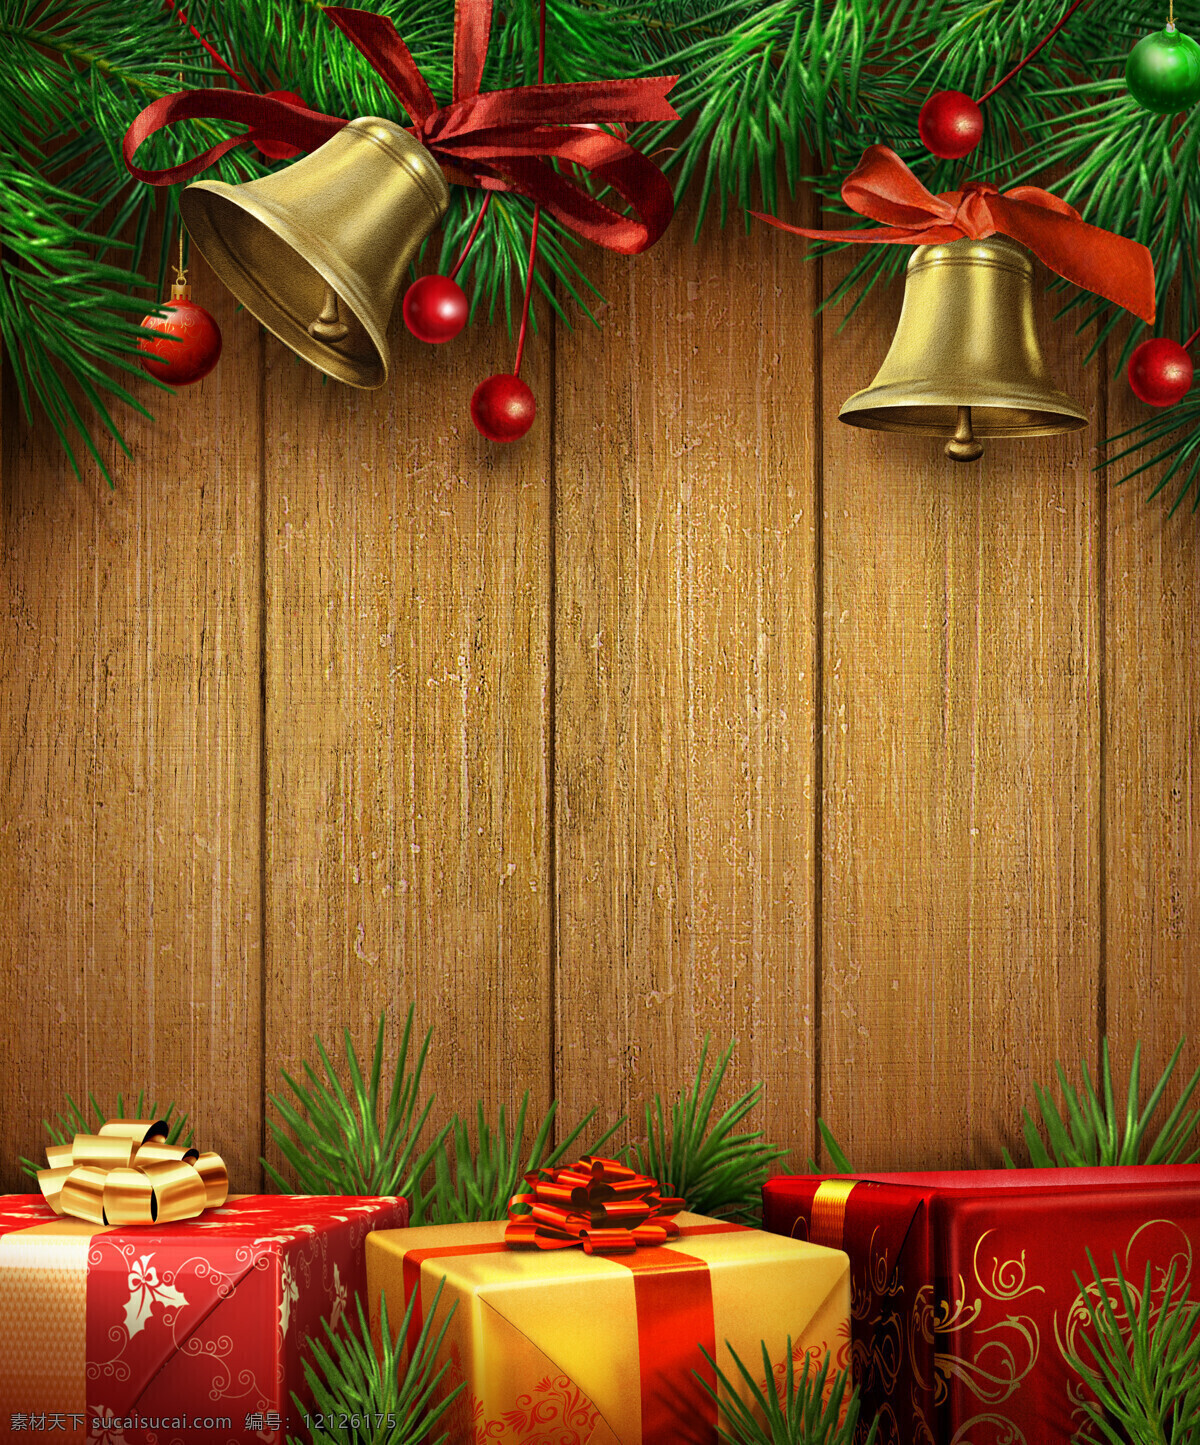 圣诞节铃铛 圣诞节 铃铛 木板 礼盒 礼物 松枝 红果子 节日庆祝 文化艺术